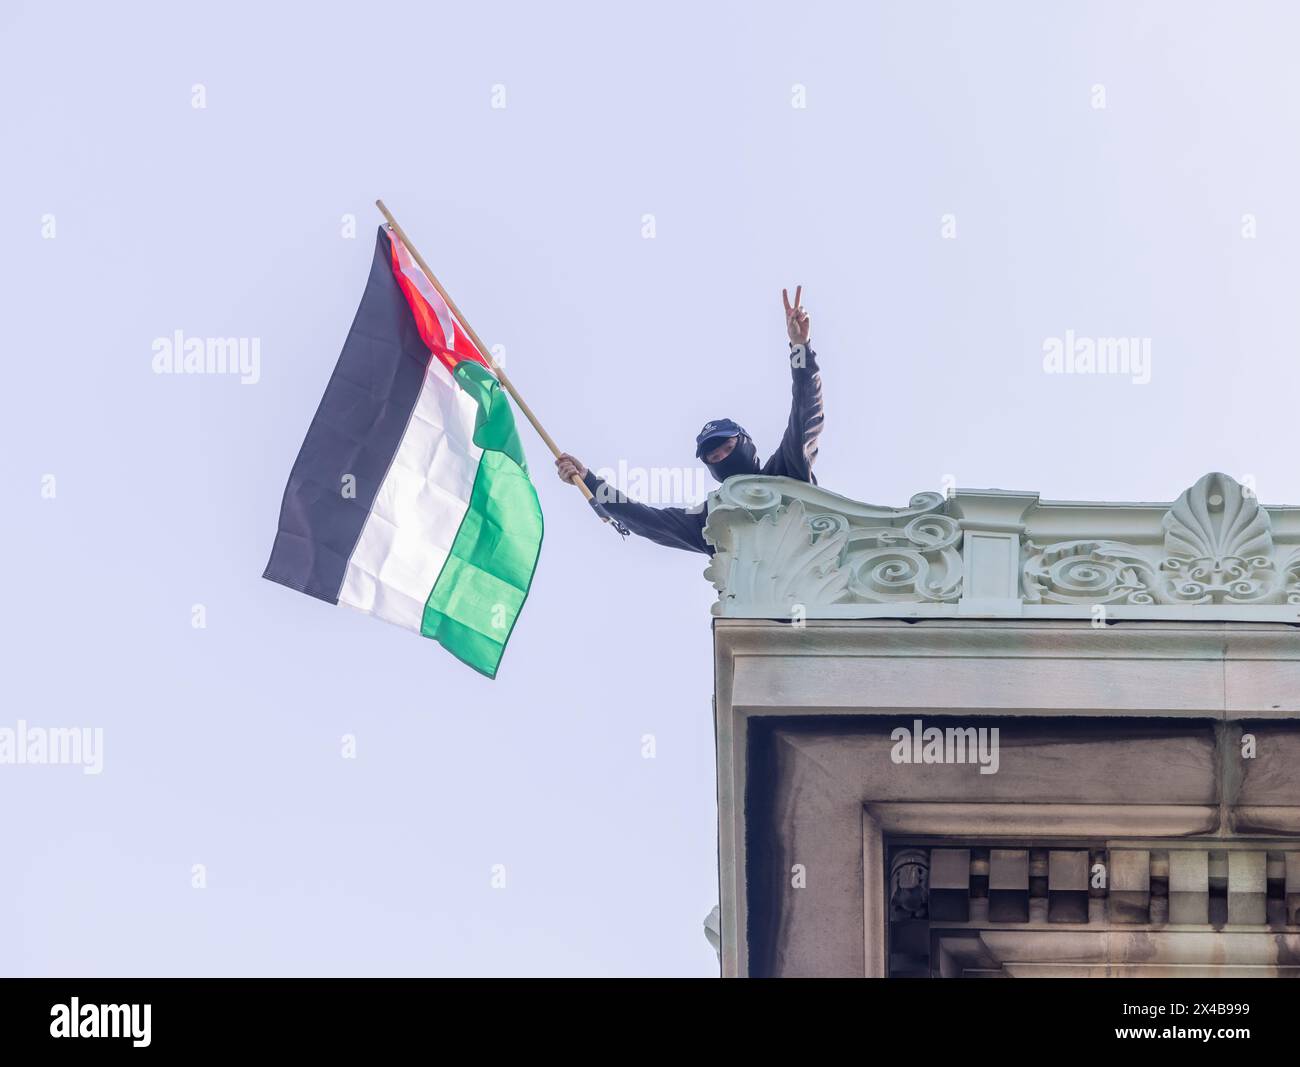 NEW YORK, NEW York – 30 avril 2024 : un manifestant agite un drapeau palestinien sur le toit du Hamilton Hall de l'Université Columbia à Manhattan. Banque D'Images